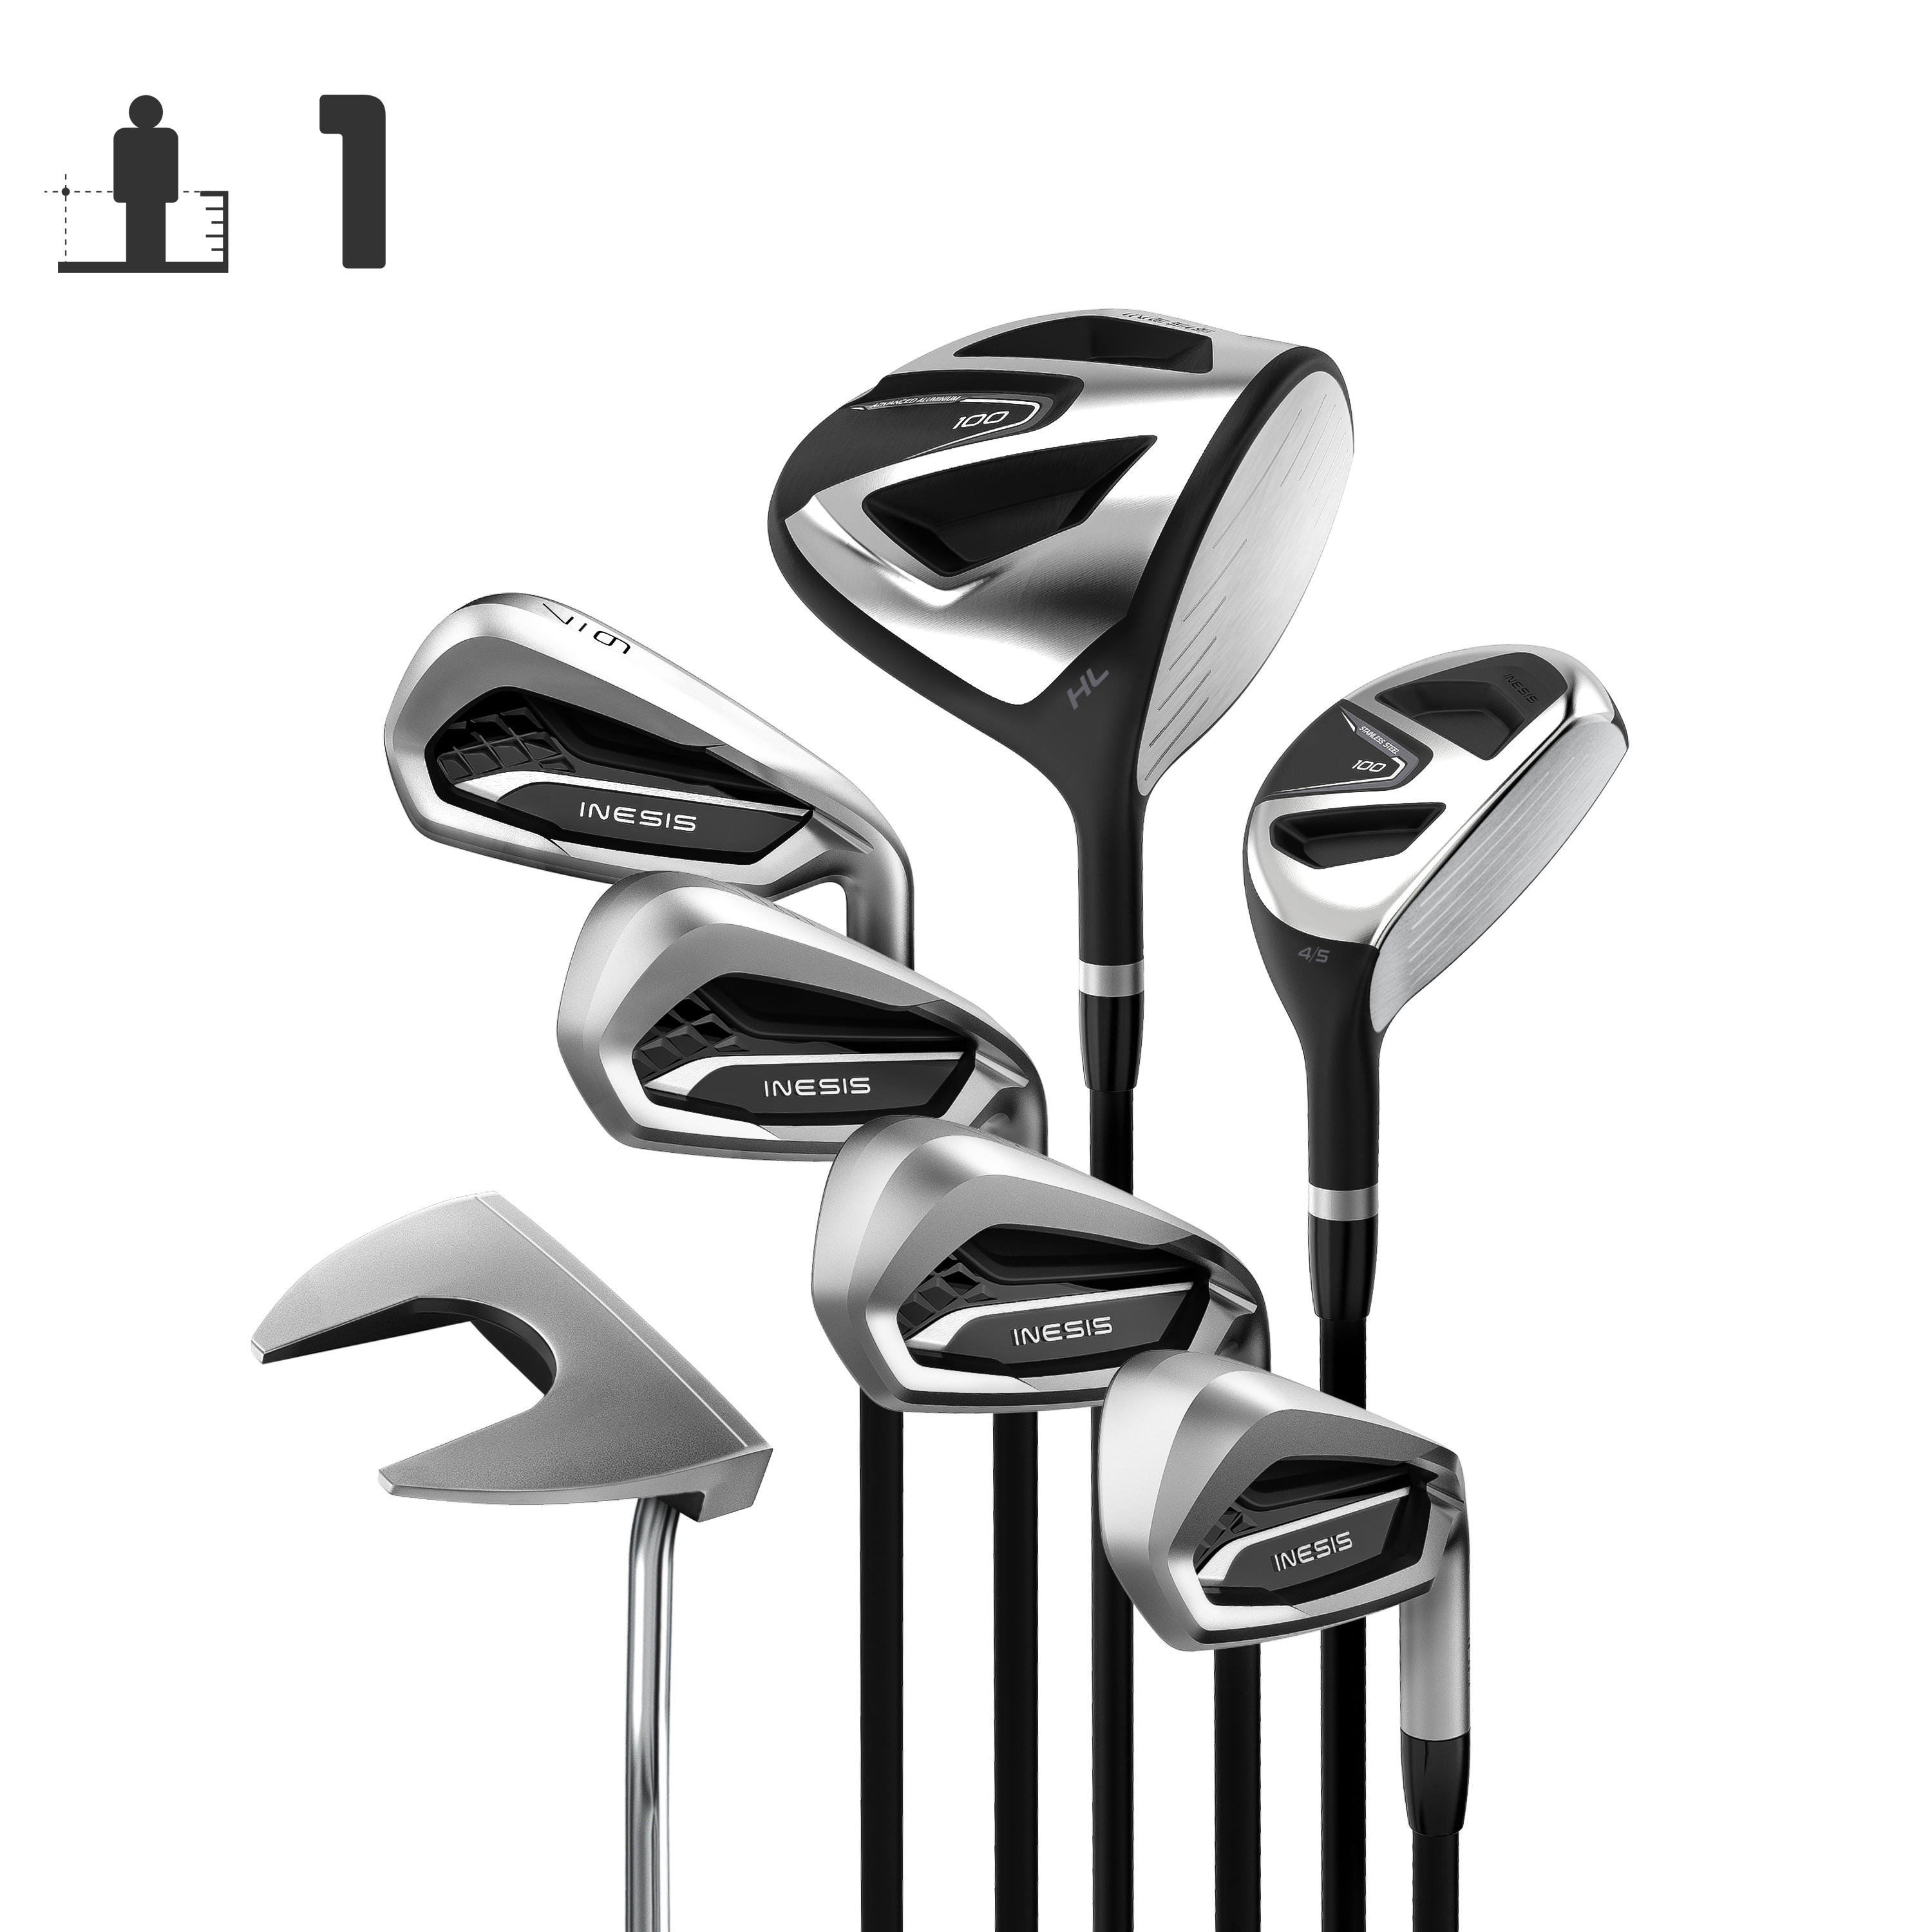 [ส่งฟรี ] ไม้กอล์ฟครบชุด ของแท้ ชุดไม้กอล์ฟก้านแกรไฟต์ 7 ไม้สำหรับผู้ใหญ่ถนัดขวารุ่น 100 (เบอร์ 1) GOLF CLUB SET GOLF KIT 7 CLUBS ADULT 100 RIGHT HANDED GRAPHITE SIZE 1 Golf clubs set MEN WOMEN ไม้กอล์ฟหัวเหล็ก ของแท้ รับประกัน 2 ปี